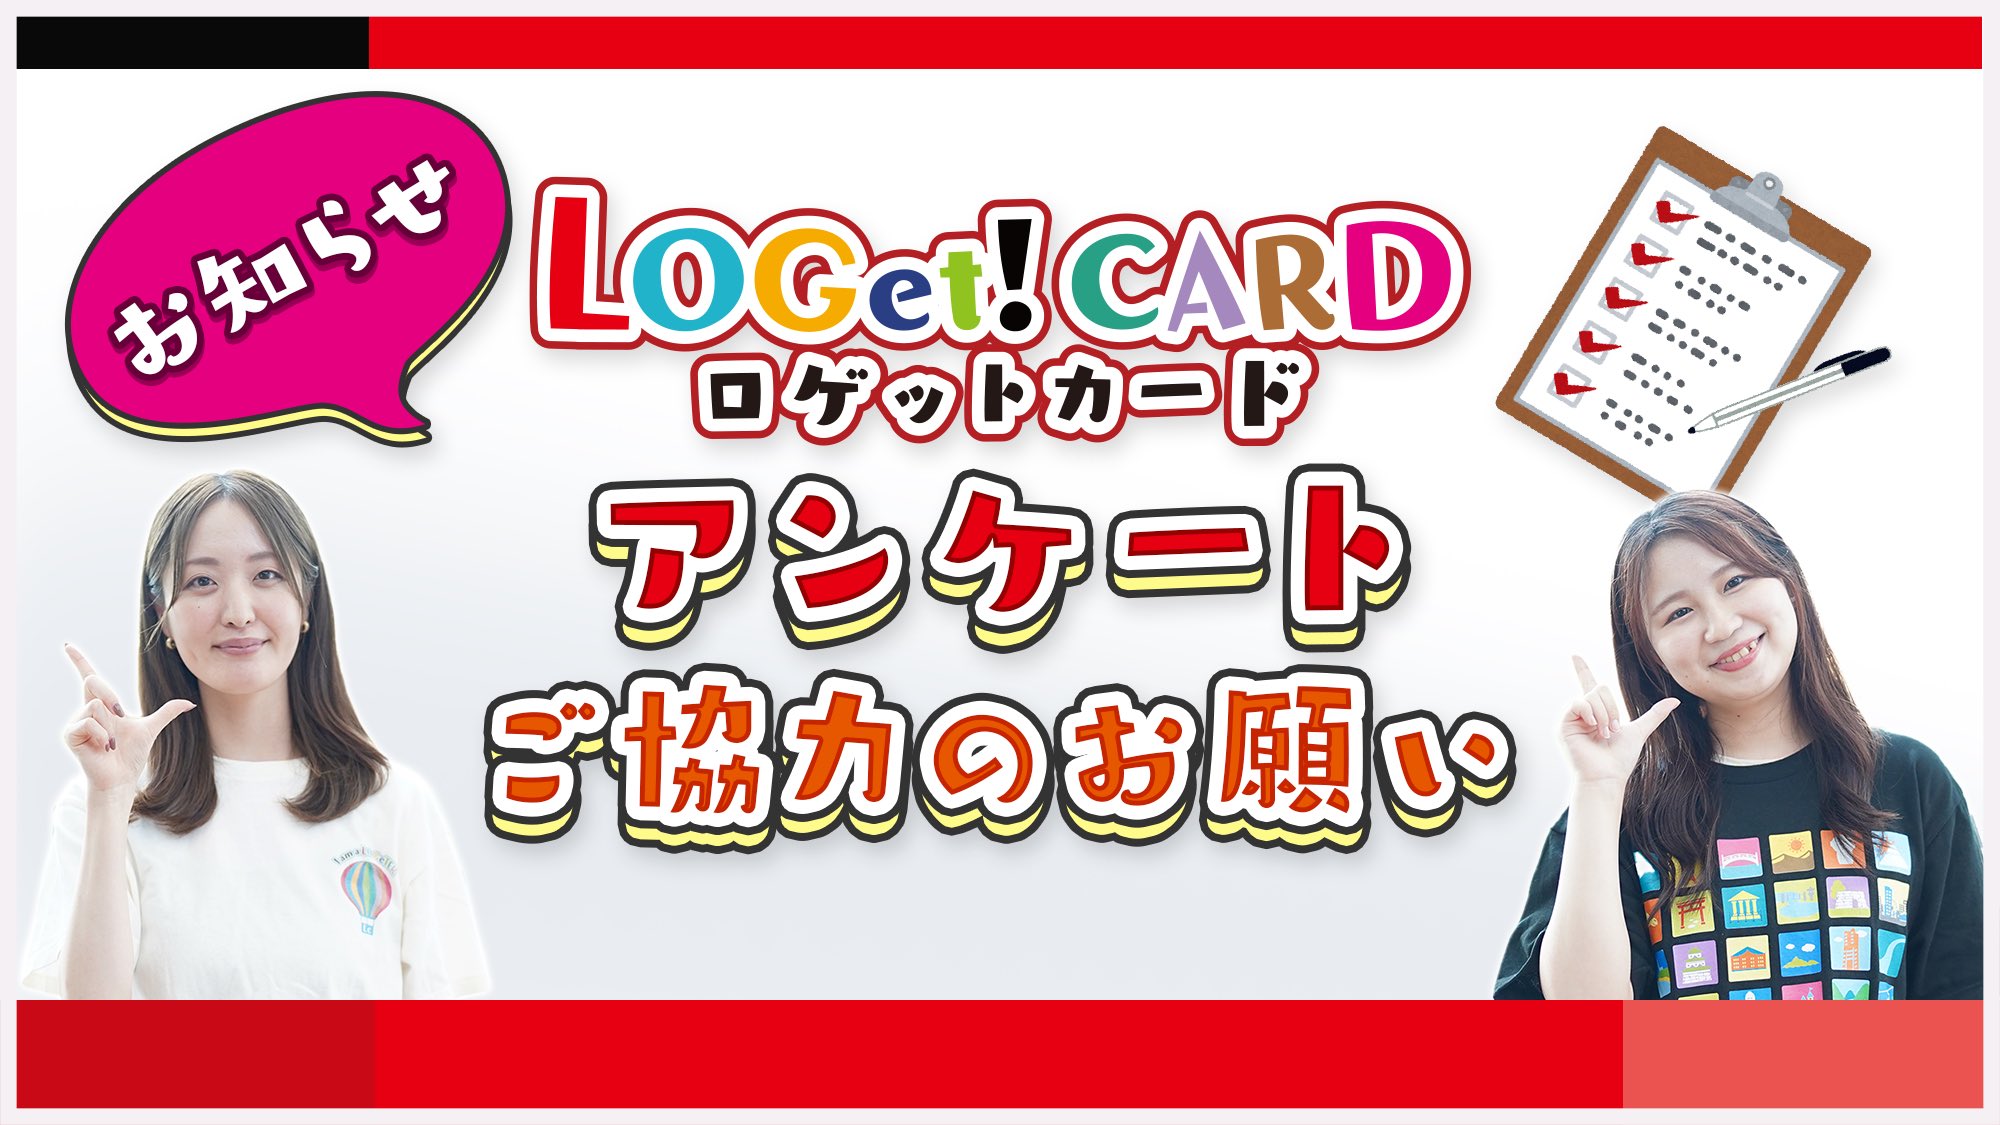 公式】ロゲットカード（LOGet!CARD）全国統一観光スポットカード 